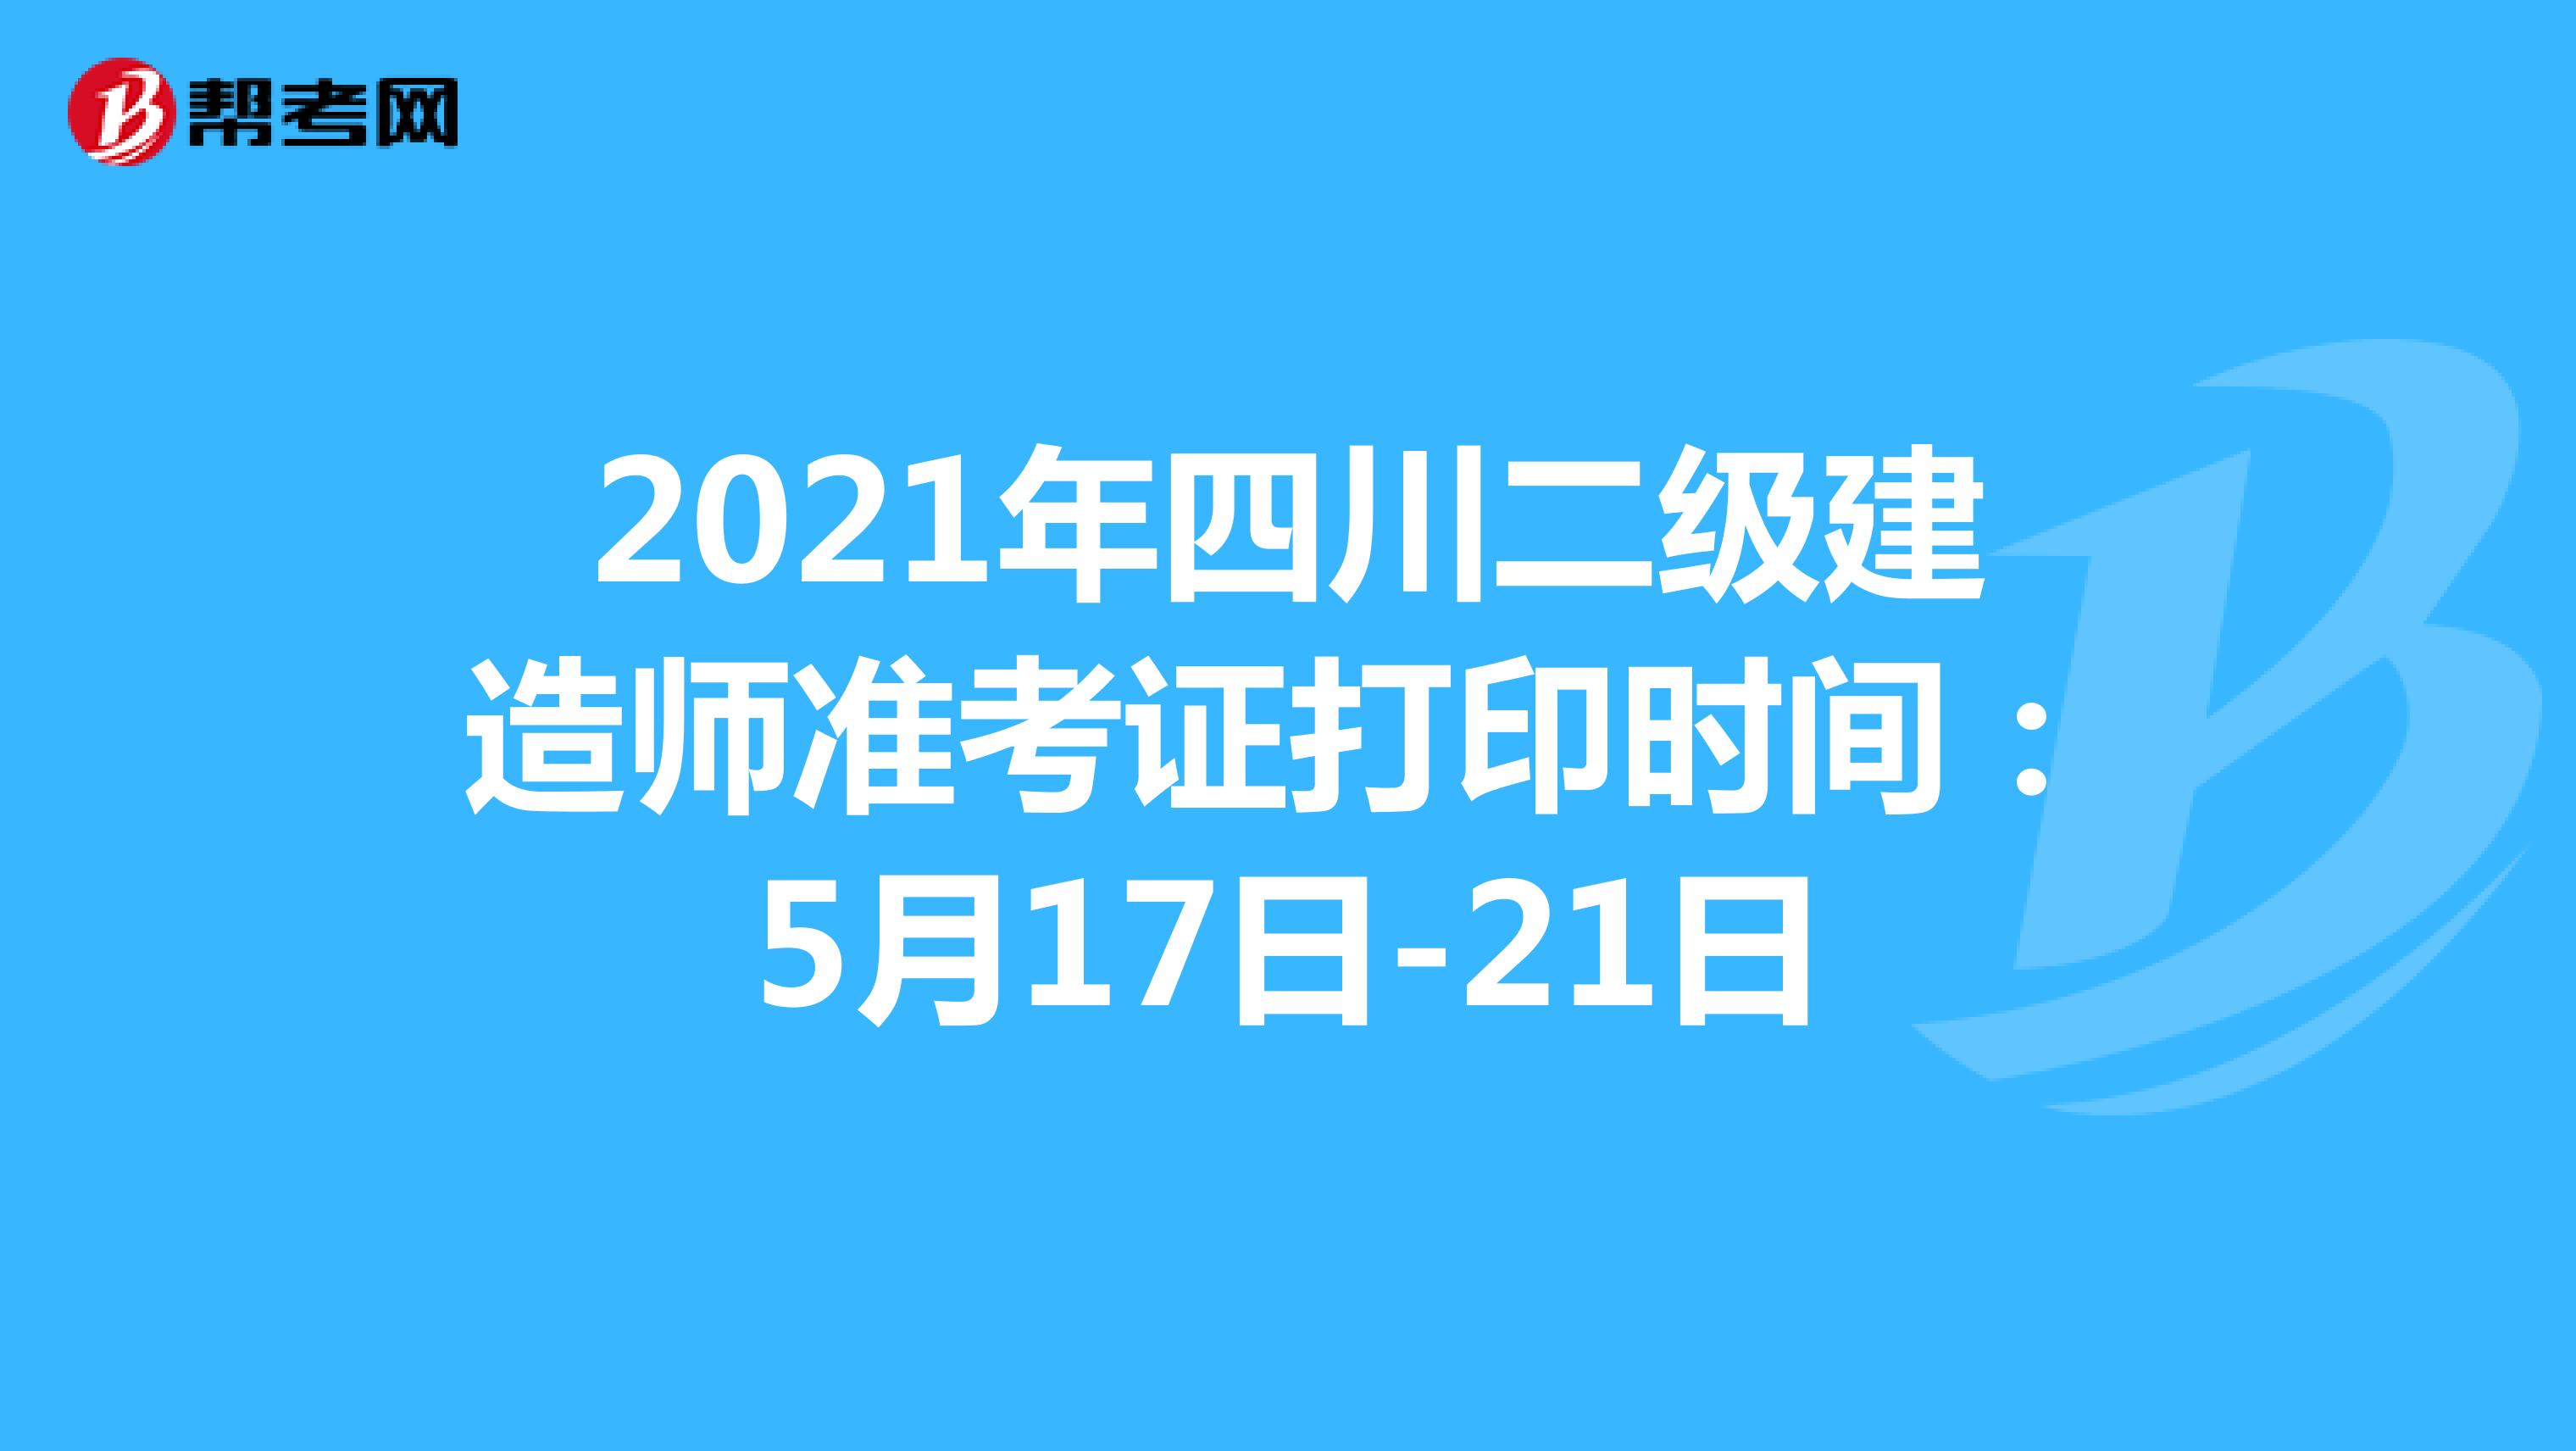 2021年四川二级建造师准考证打印时间：5月17日-21日